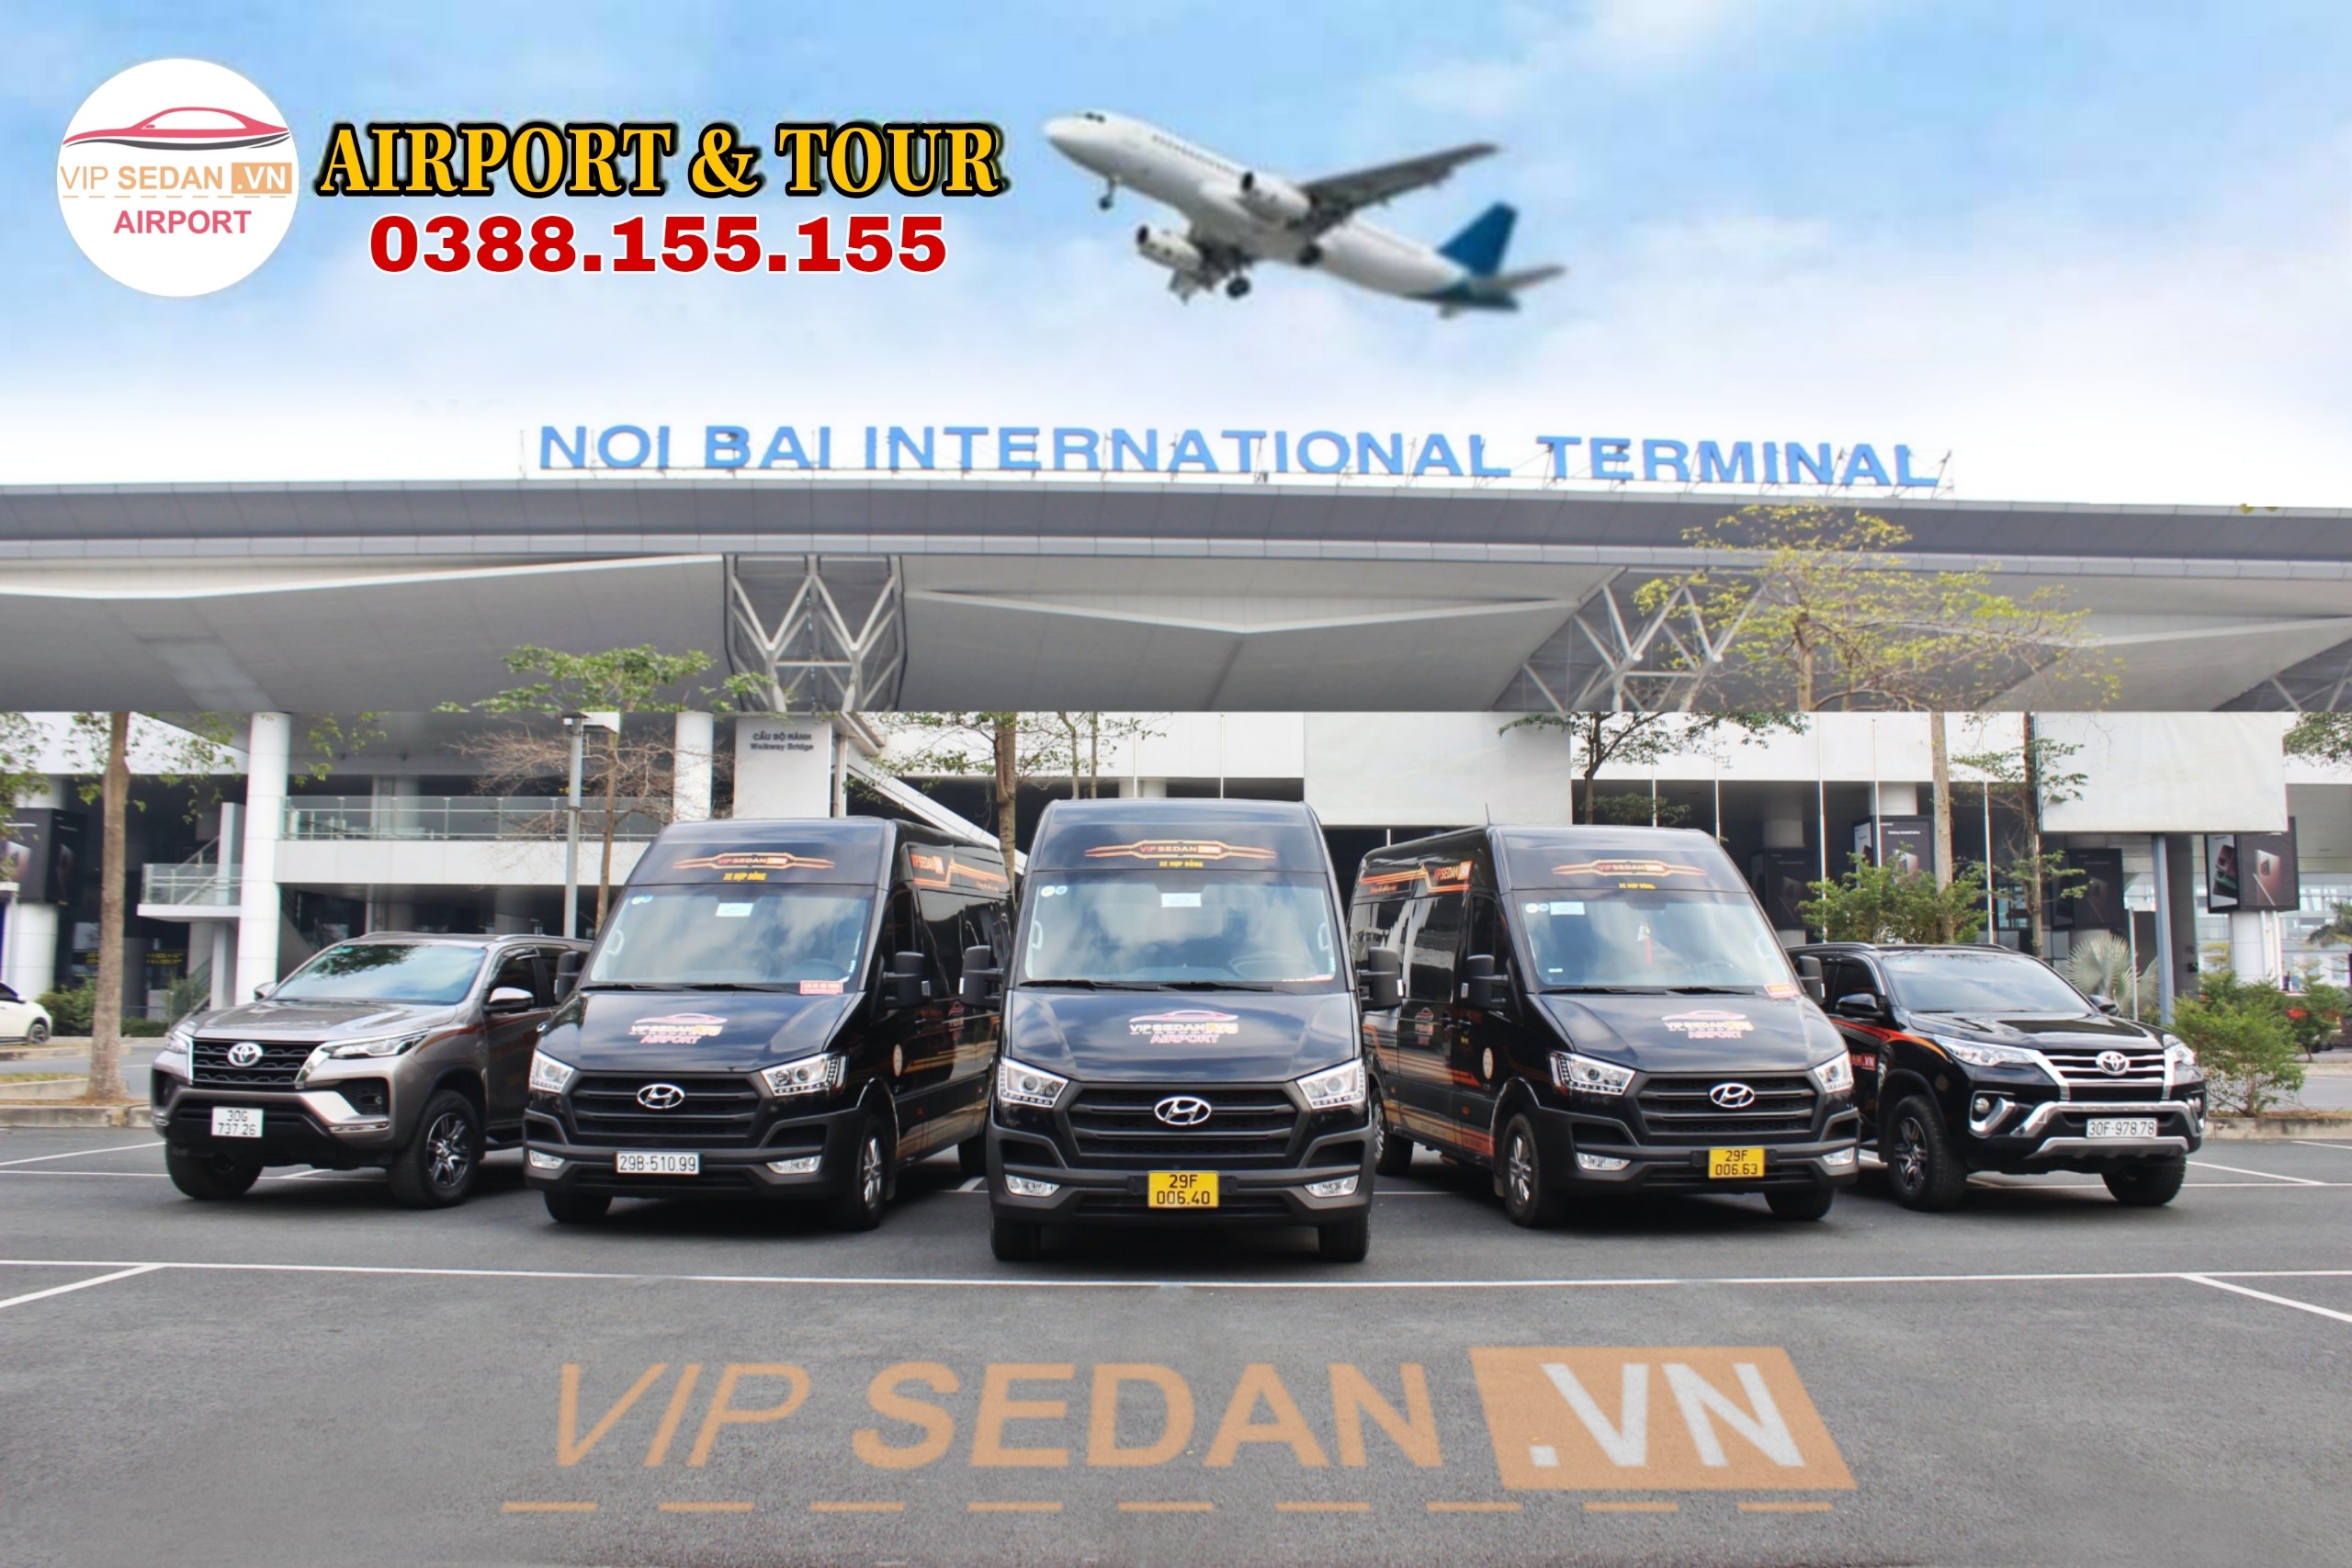 Taxi sân bay (airport) Nội Bài chất lượng cao, giá rẻ